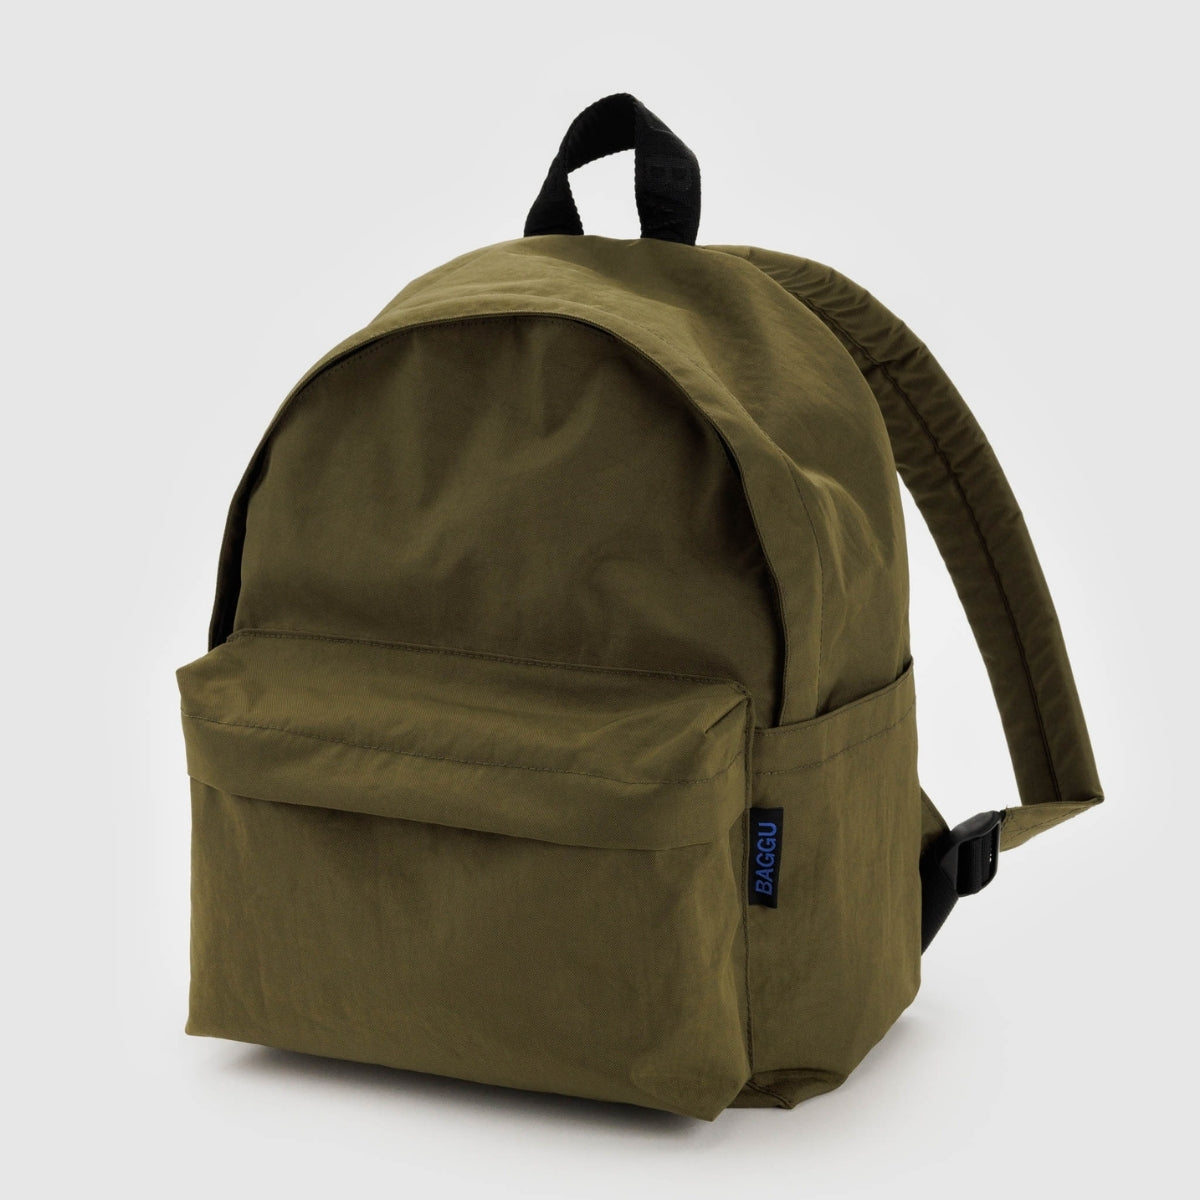 Baggu Medium Nylon Backpack in Seaweed